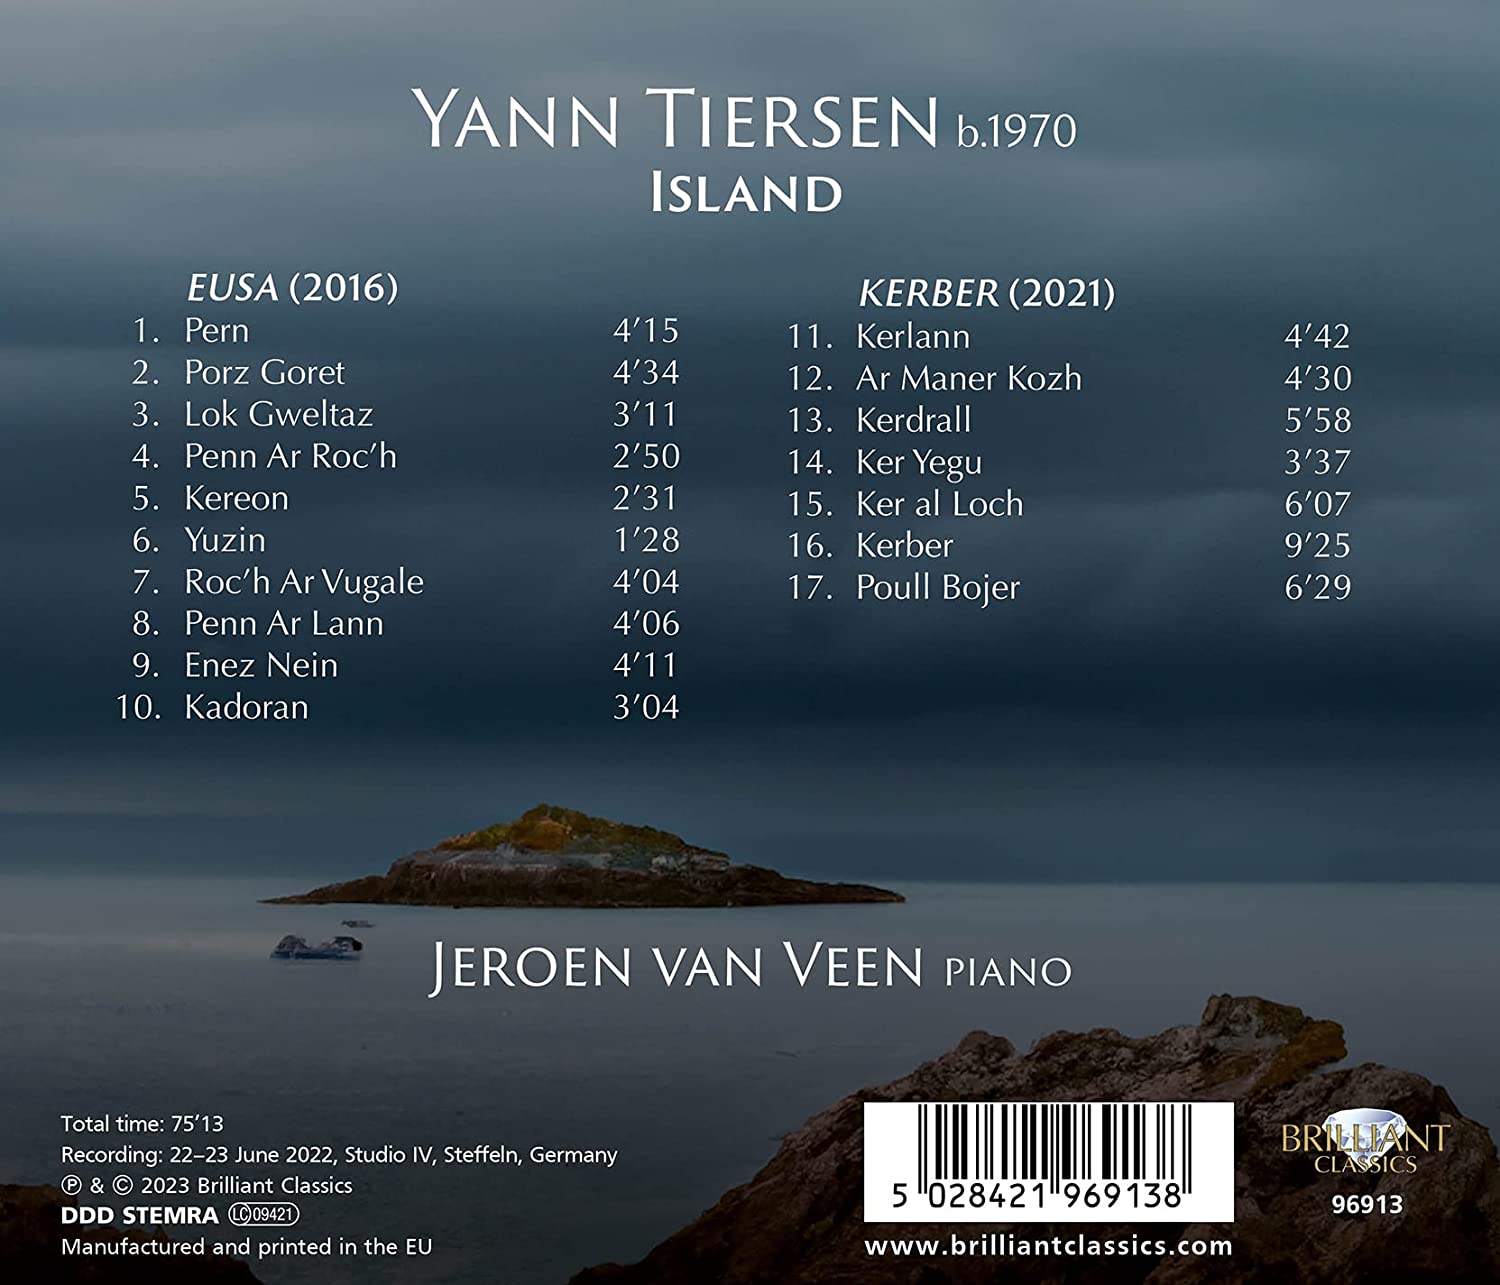 Jeroen van Veen 얀 티에르상: ‘섬’ (Yann Tiersen: Island) 